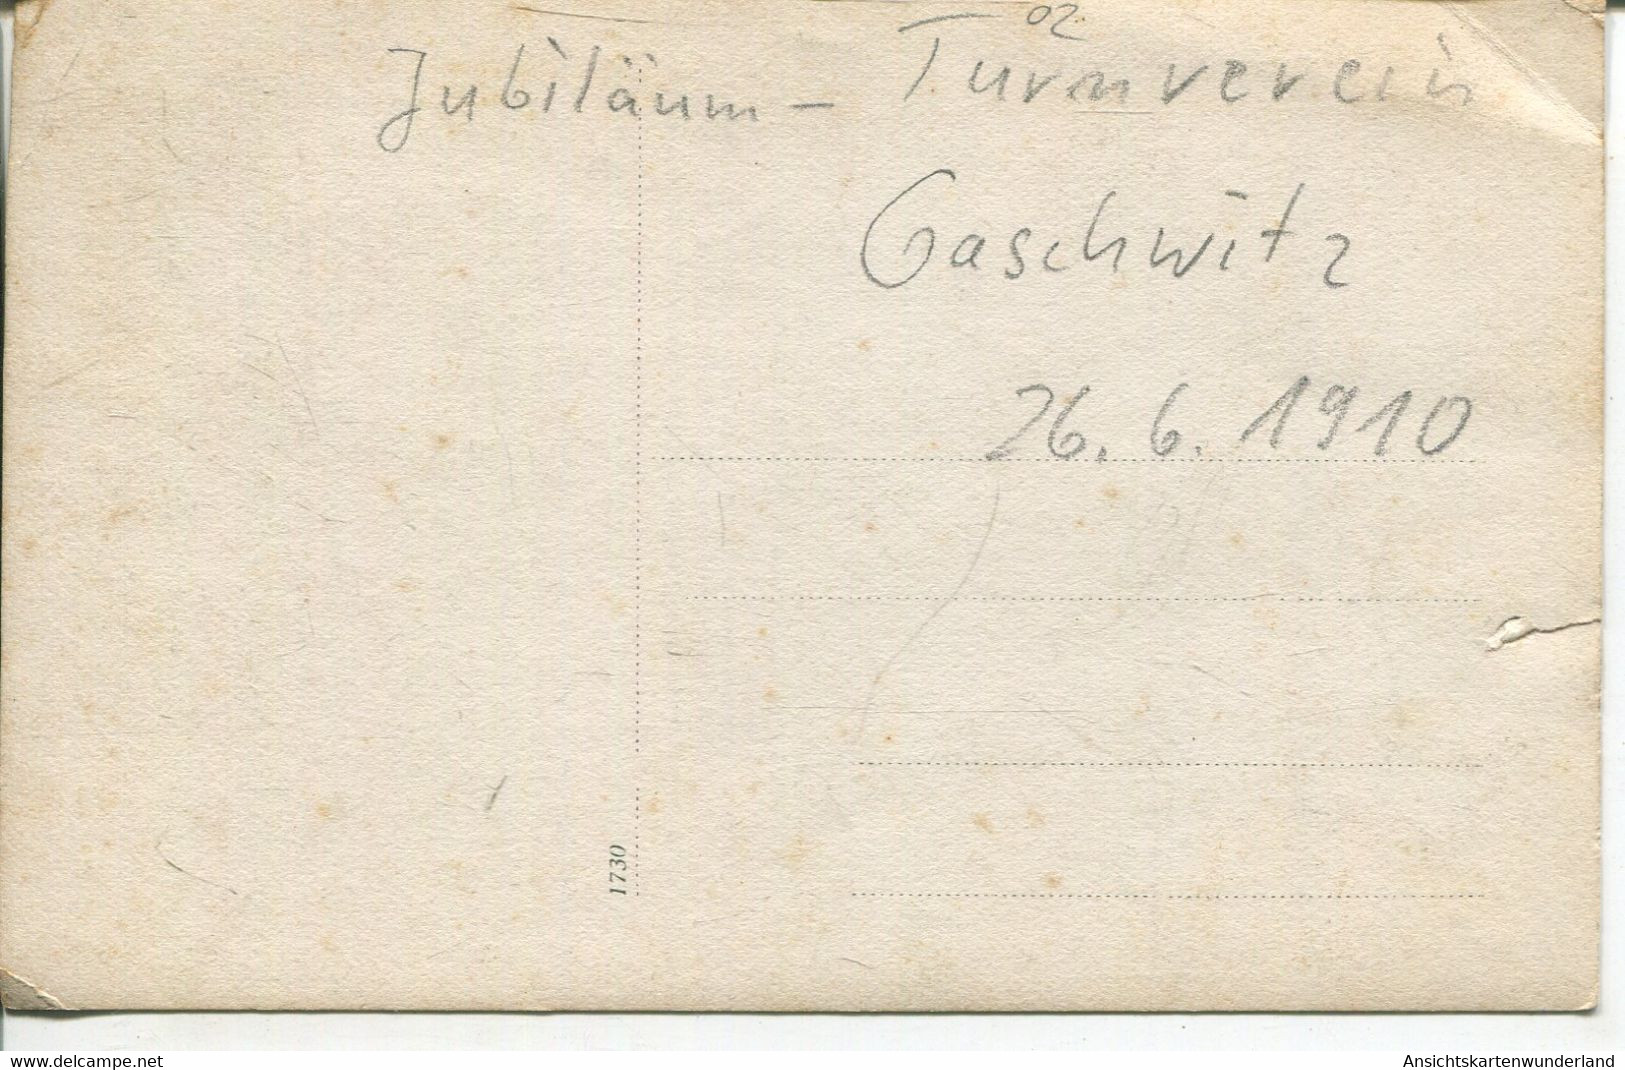 010941  Jubiläum Turnverein Gaschwitz 1910 - Markkleeberg